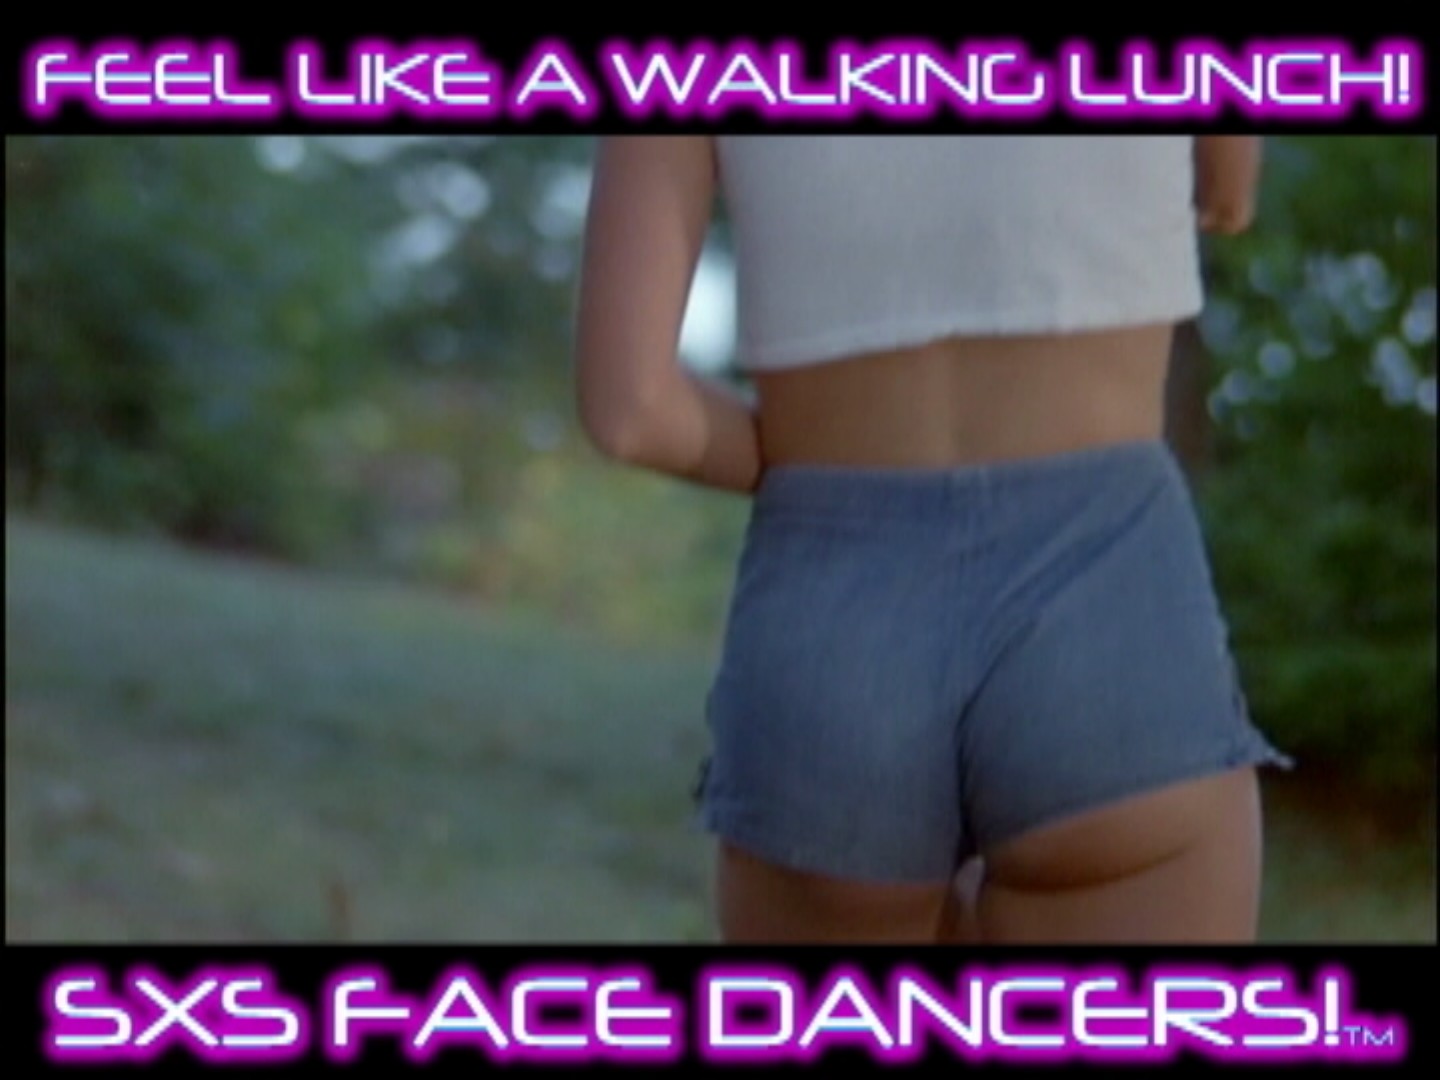 SXS FACE DANCERS™ Video!